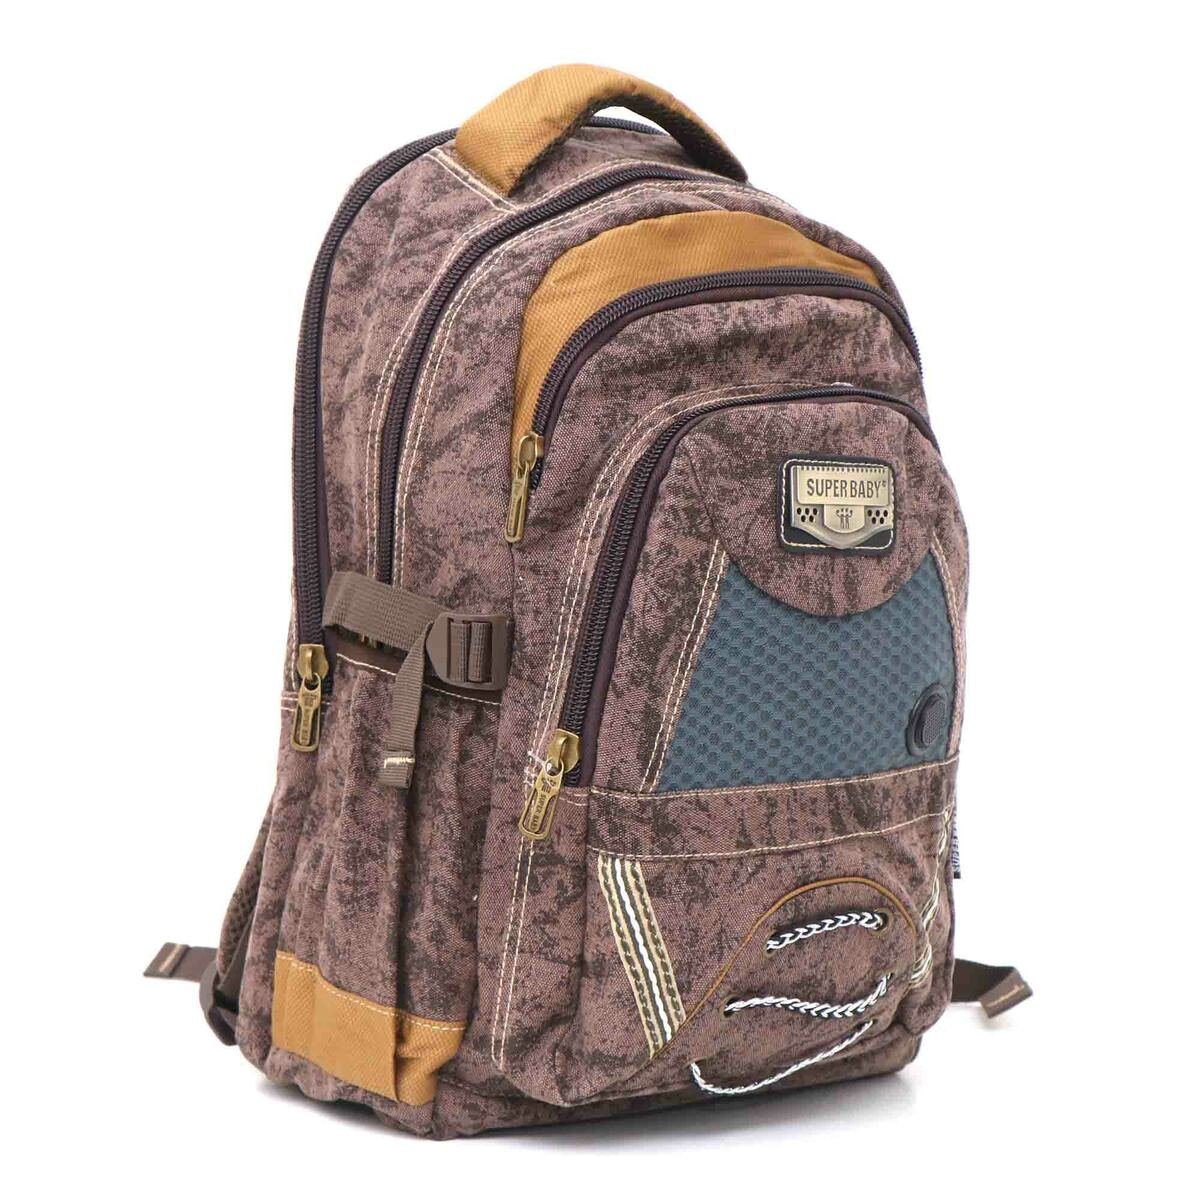 Super Baby Canvas Backpack HL878 18''